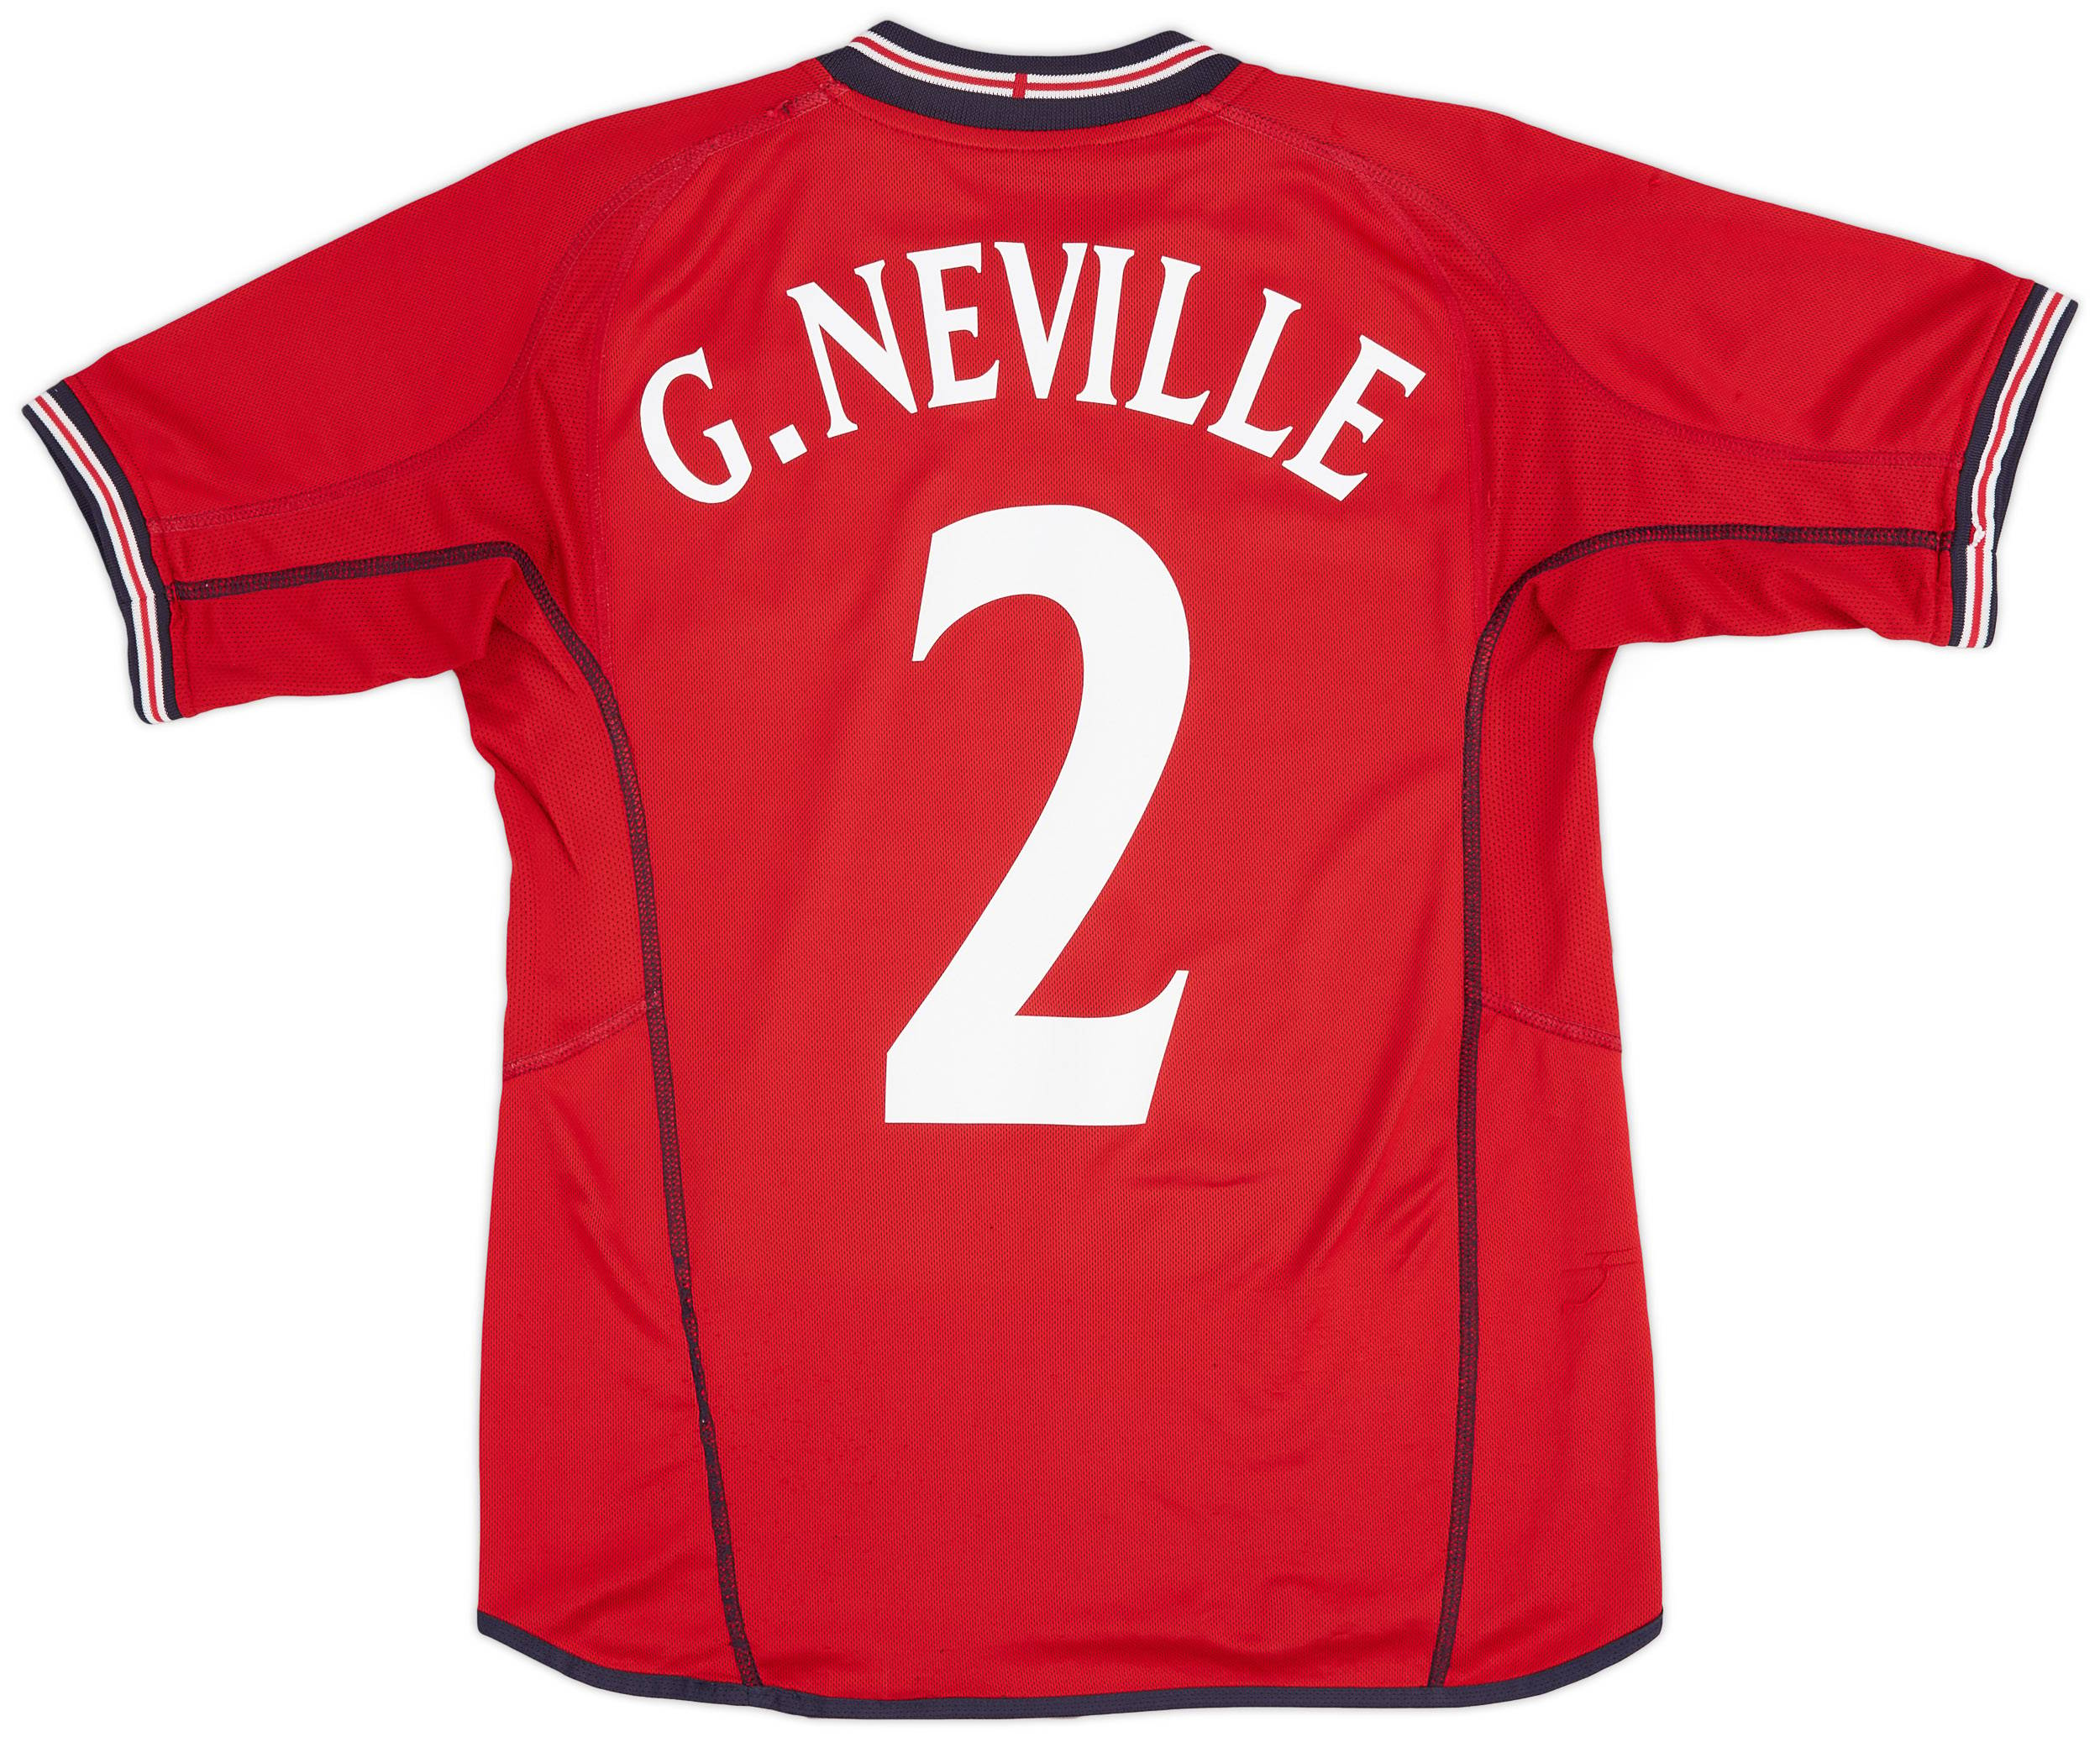 2002-04 England Away Shirt G.Neville #2 - 8/10 - (S)